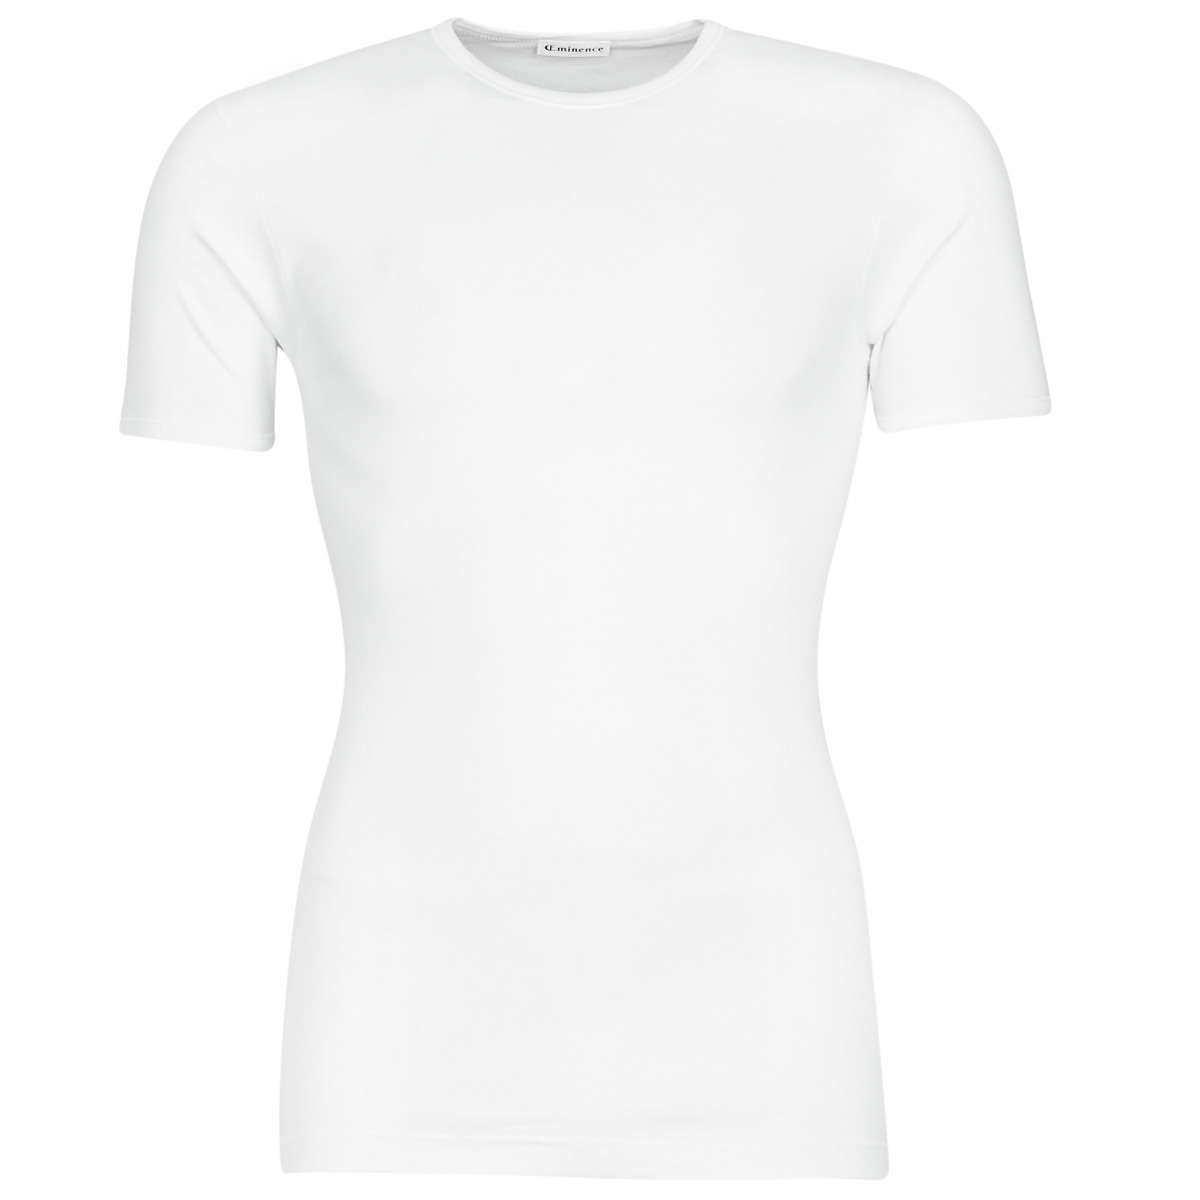 Textiel Heren T-shirts korte mouwen Eminence 308-0001 Wit